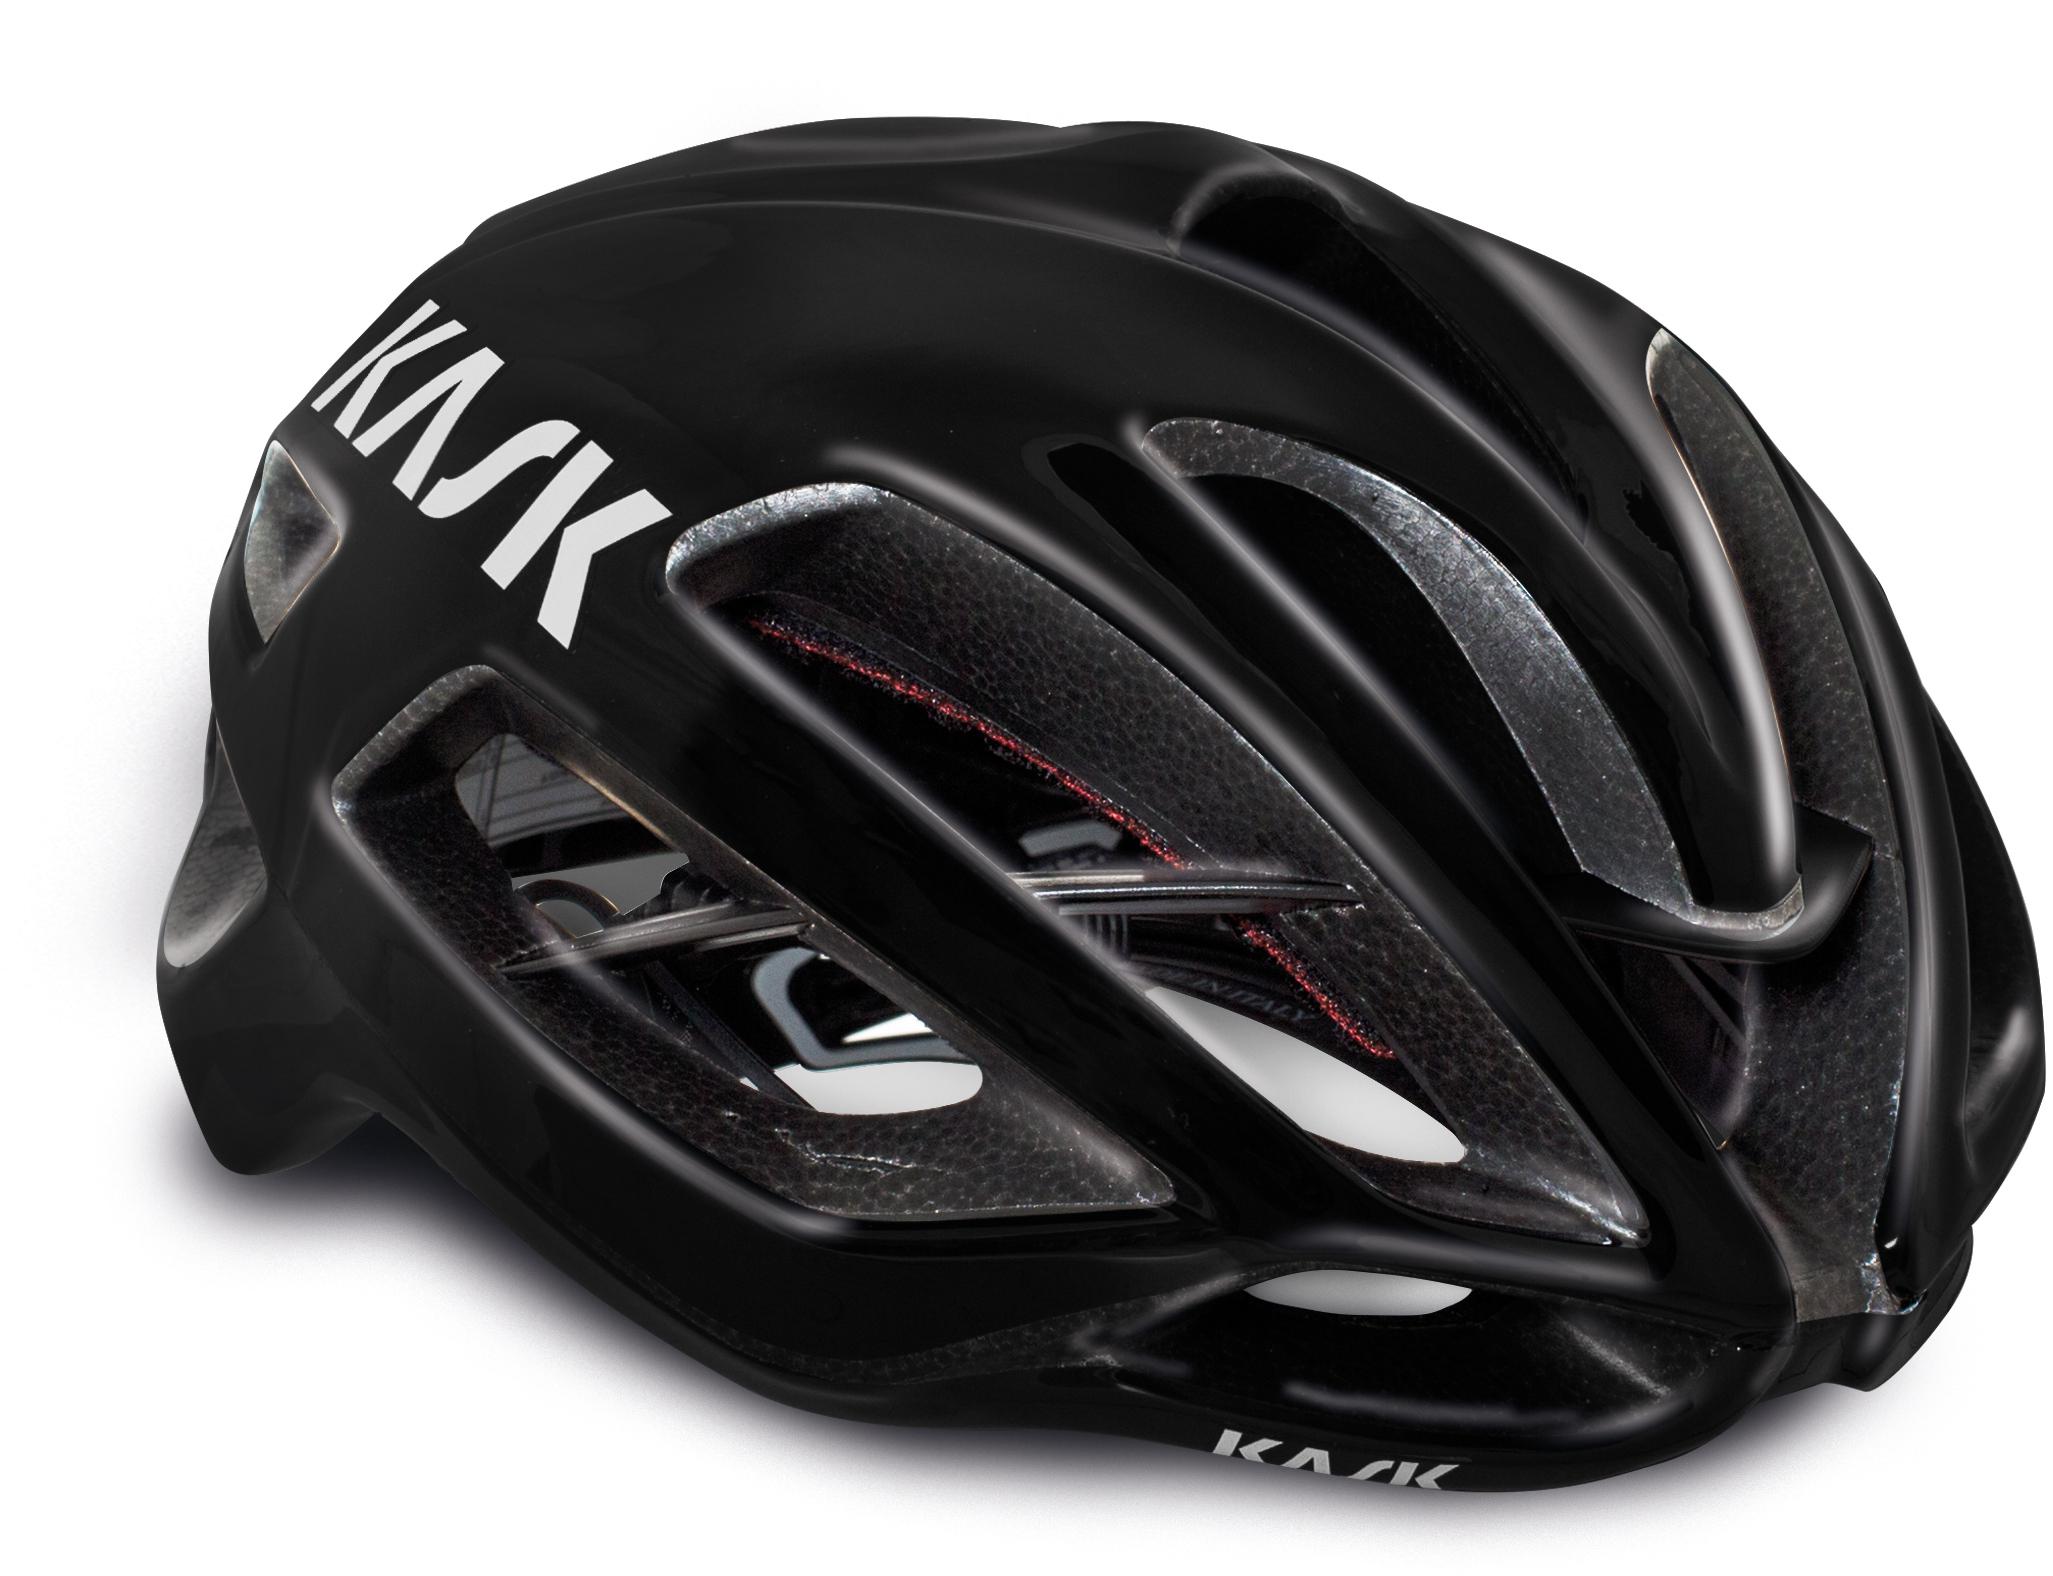 Kask Protone Wg11 Road Helmet, Black, Medium